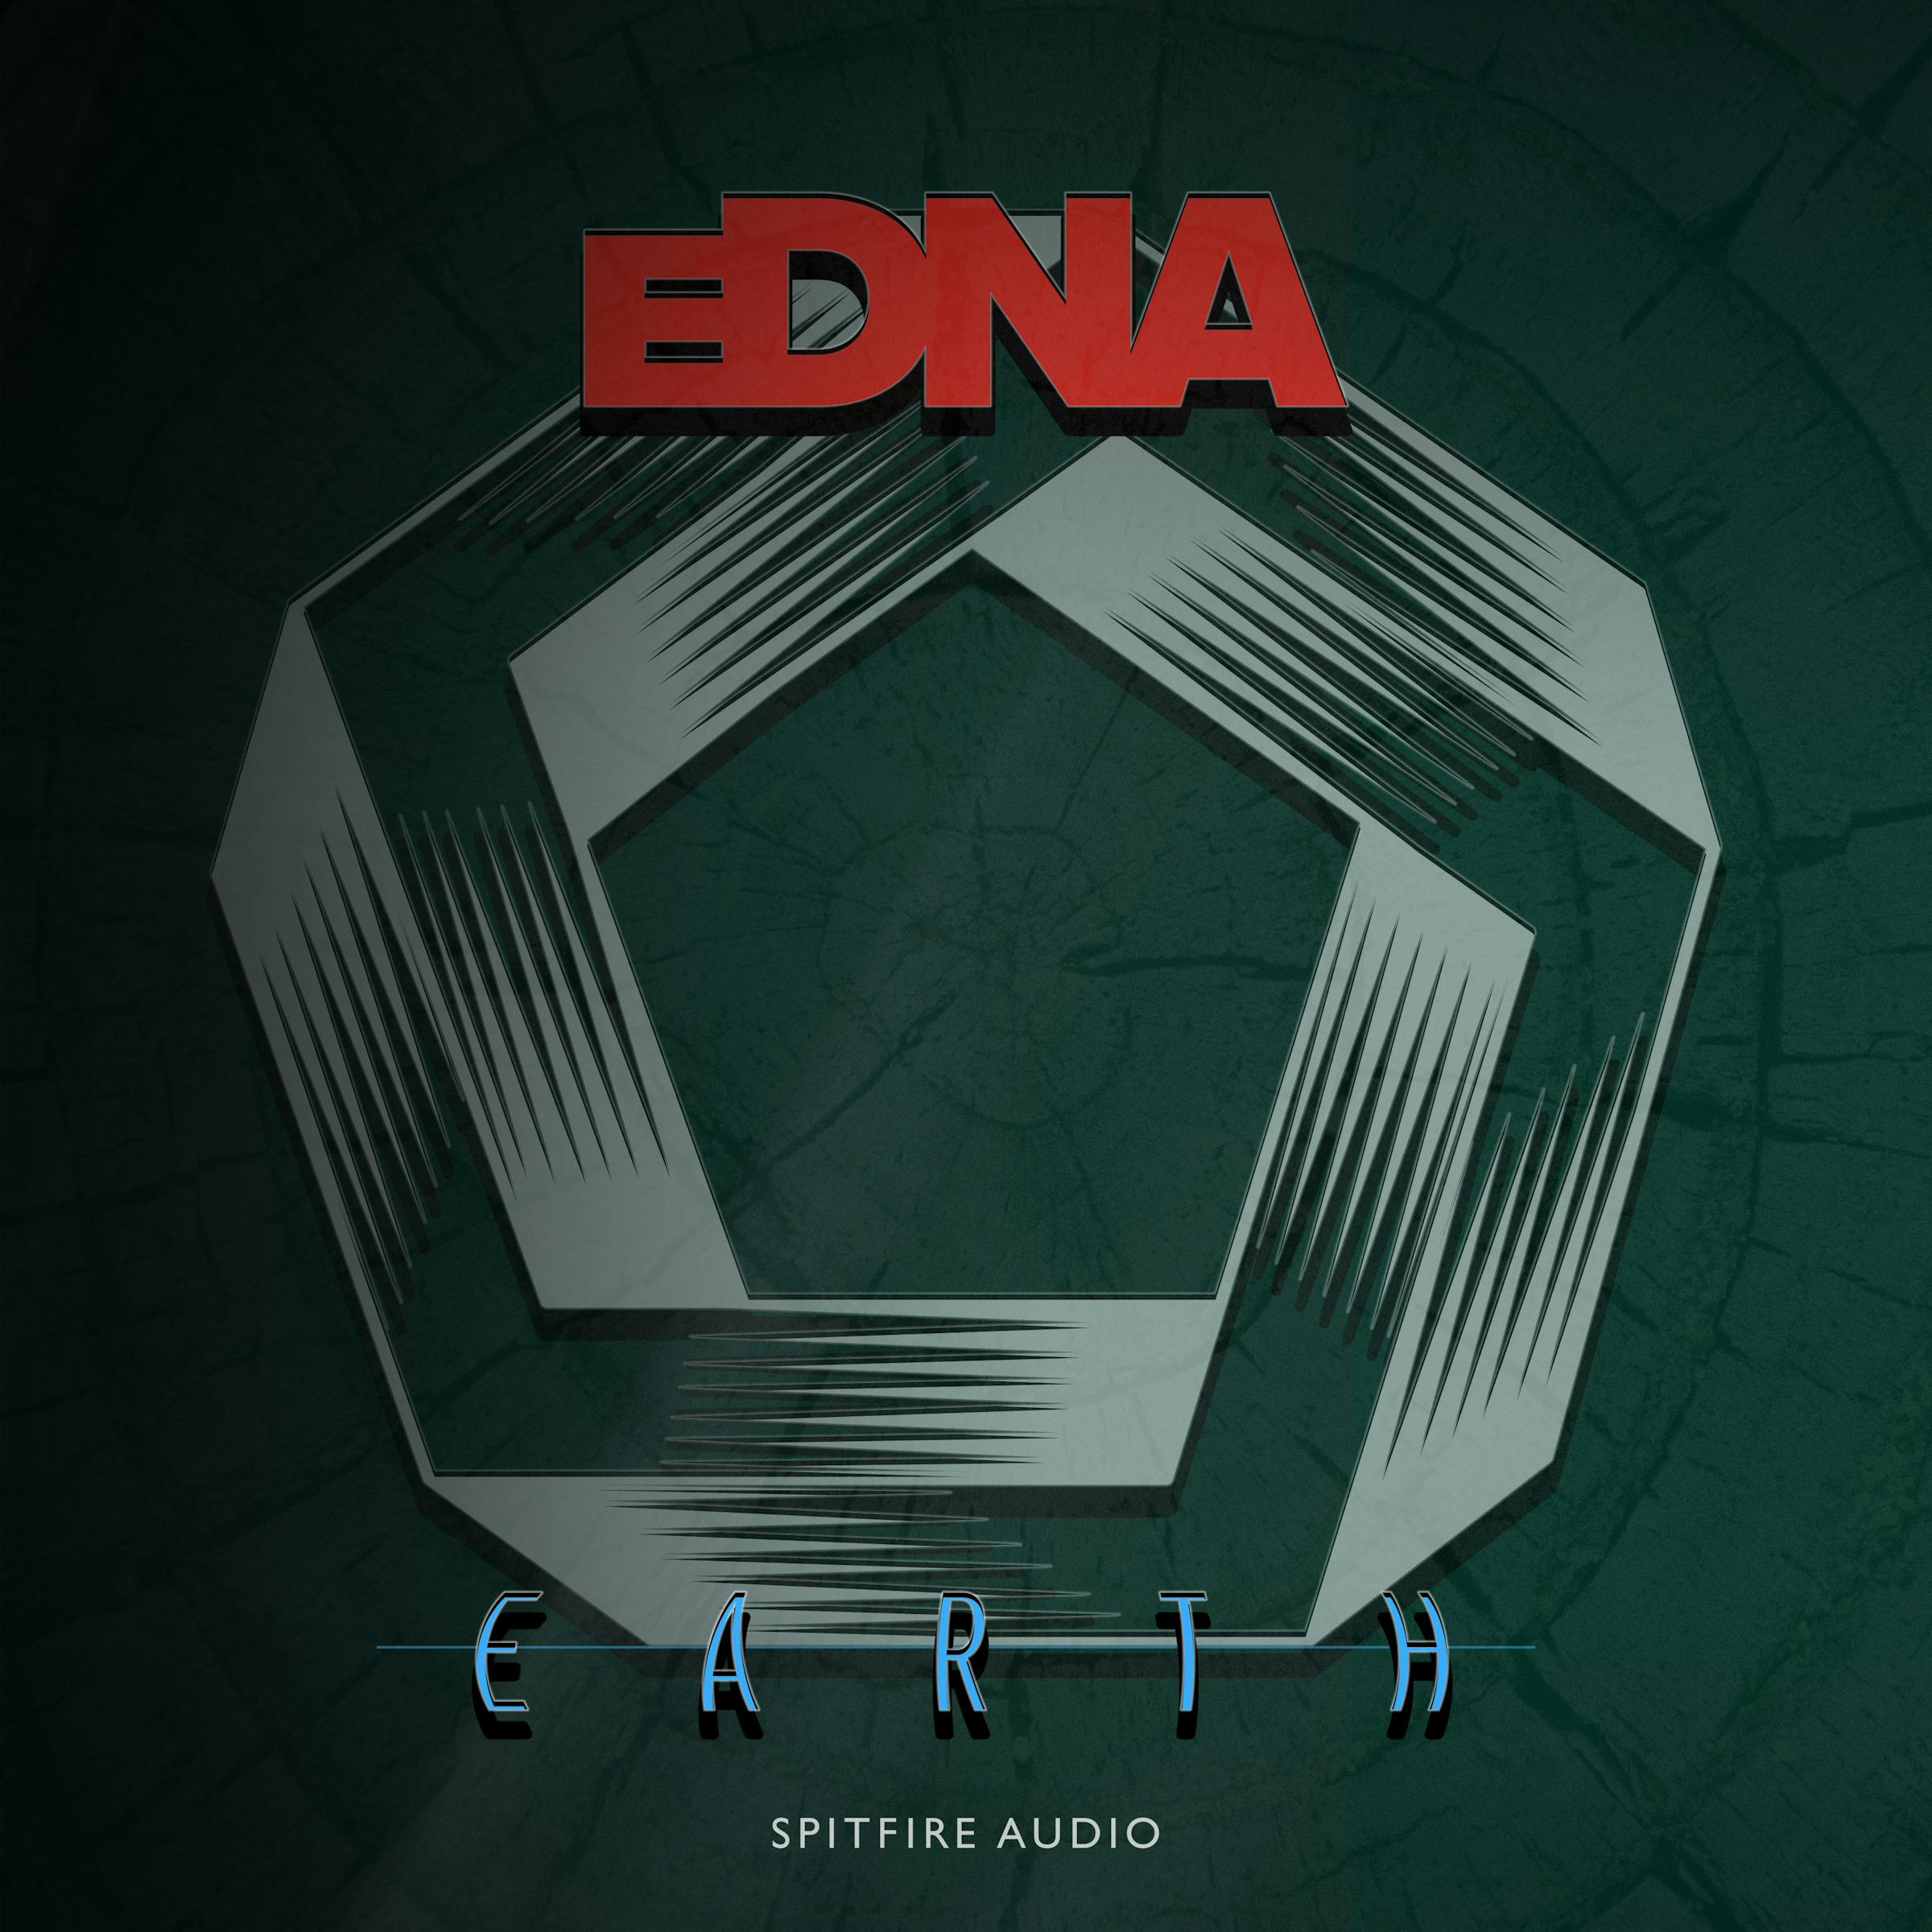 eDNA Earth artwork